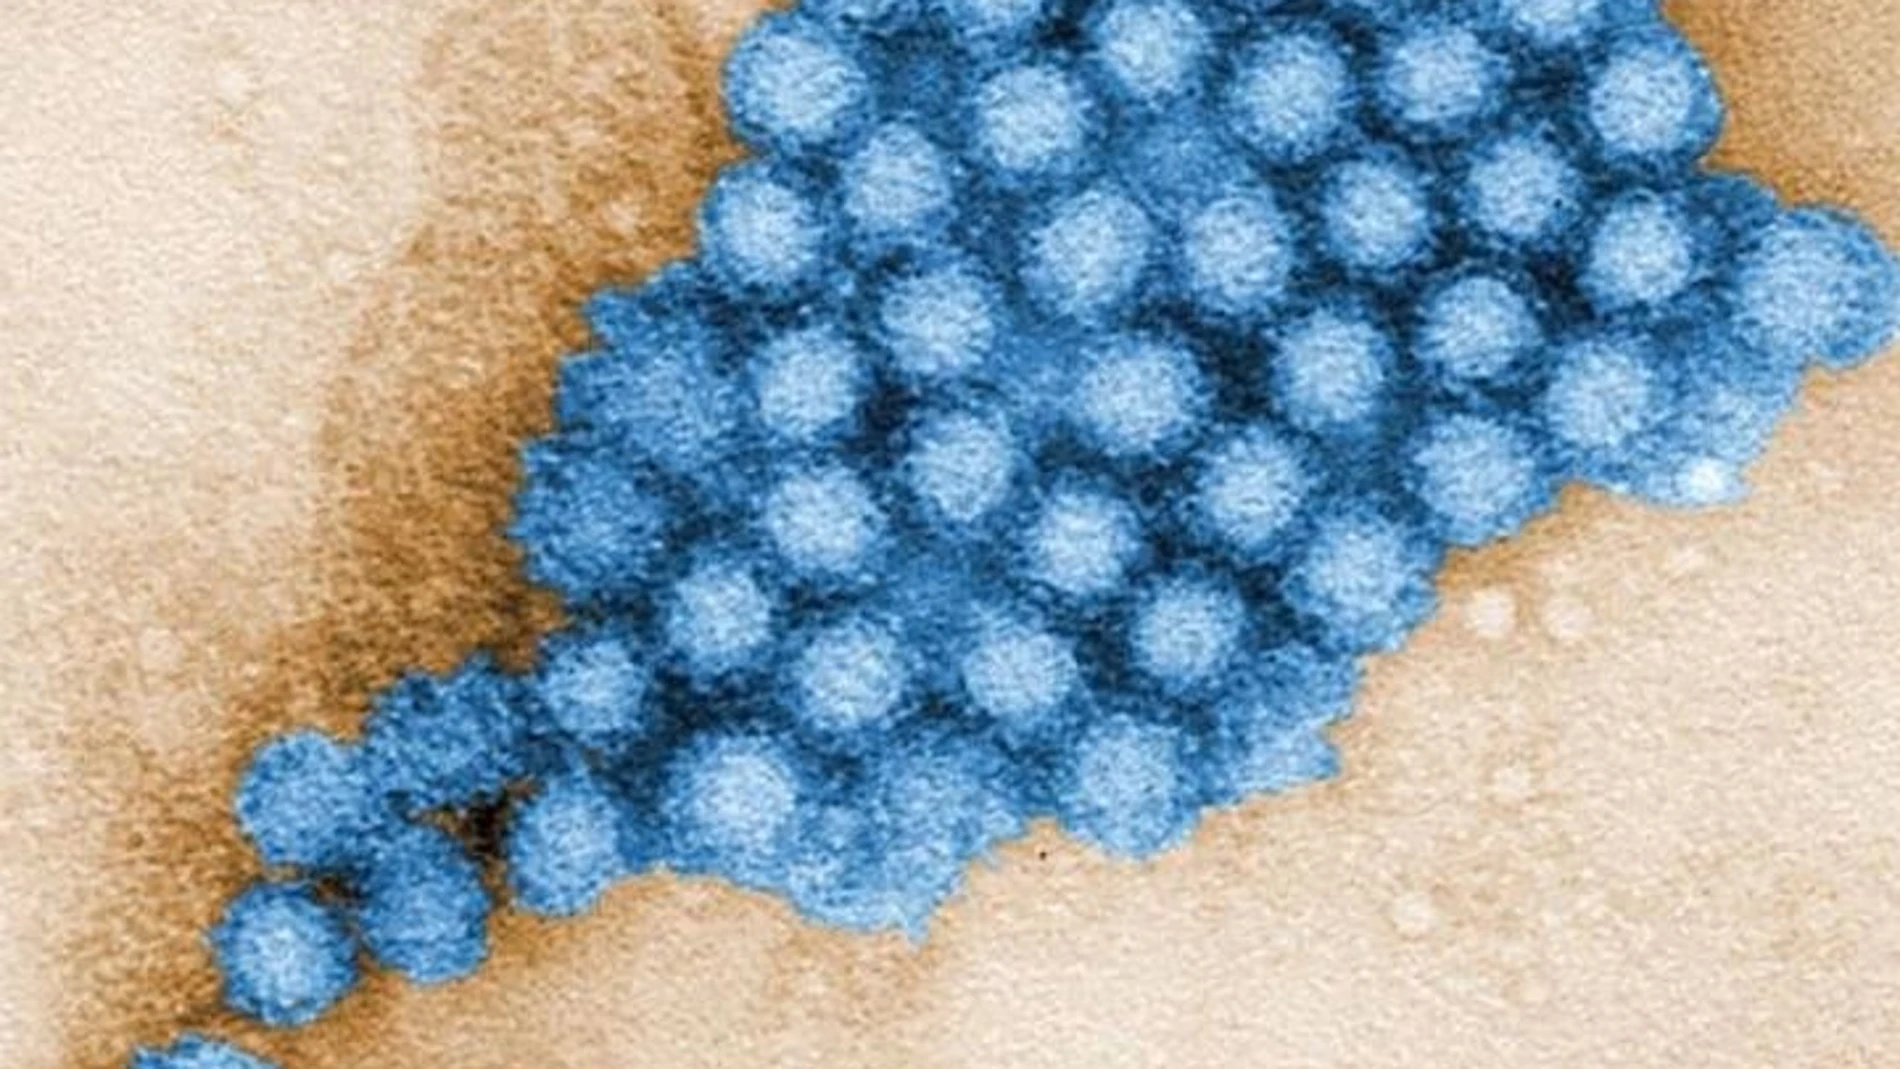 Los microbios intestinales pueden reducir o aumentar la gravedad de la infección por norovirus en función del lugar a lo largo del intestino donde se asiente el virus